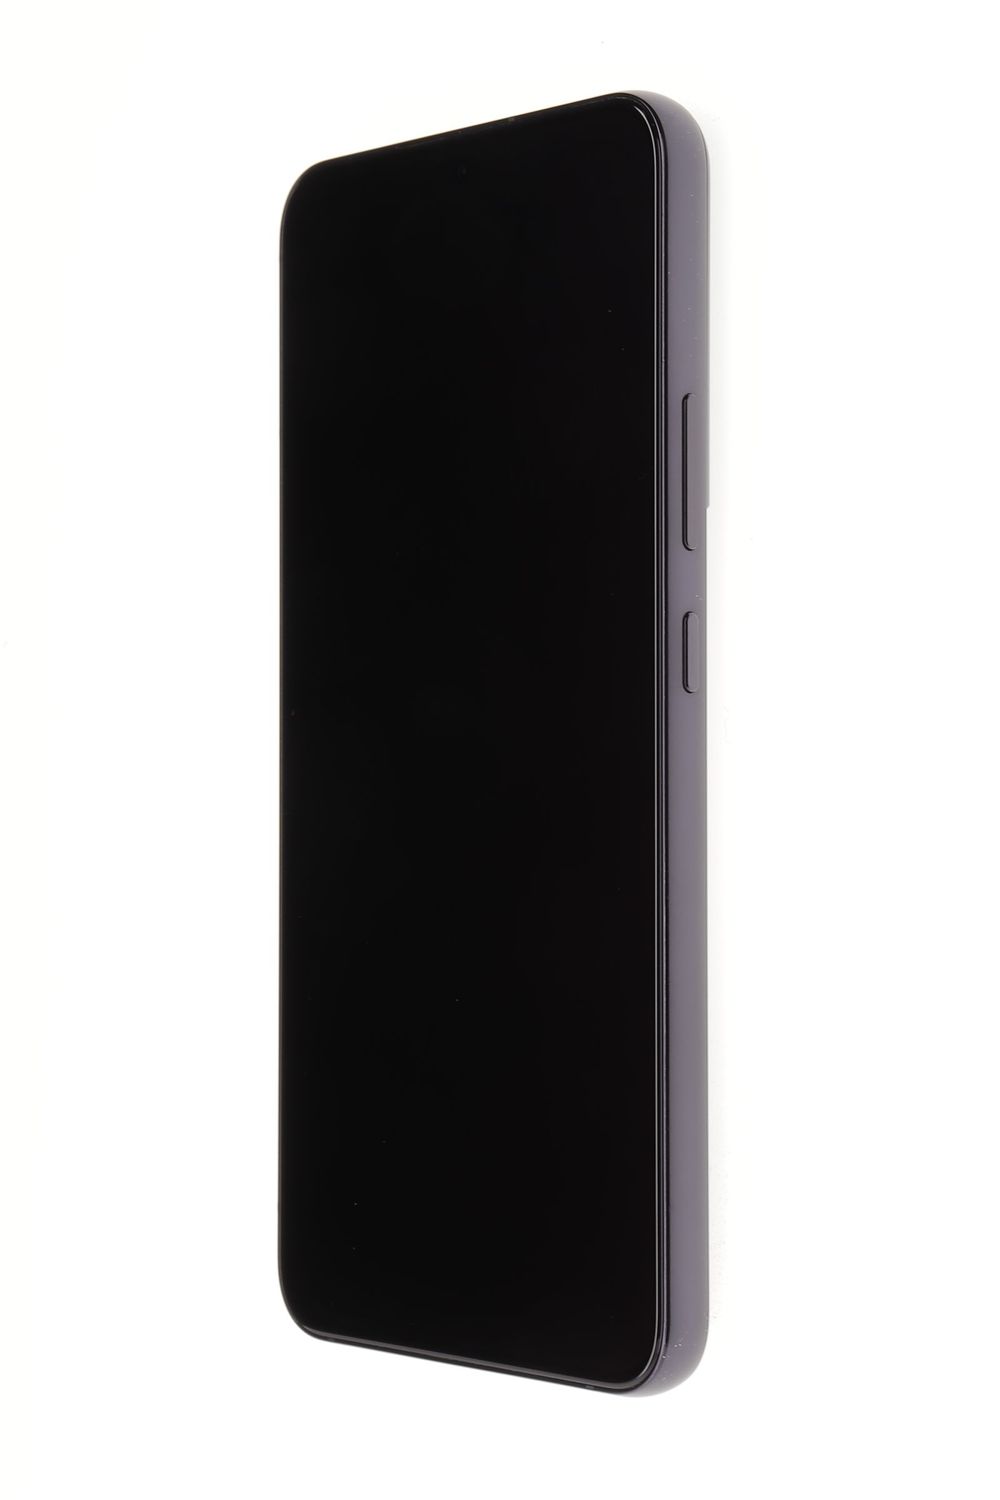 Telefon mobil Samsung Galaxy S22 Plus 5G Dual Sim, Phantom Black, 256 GB, Excelent